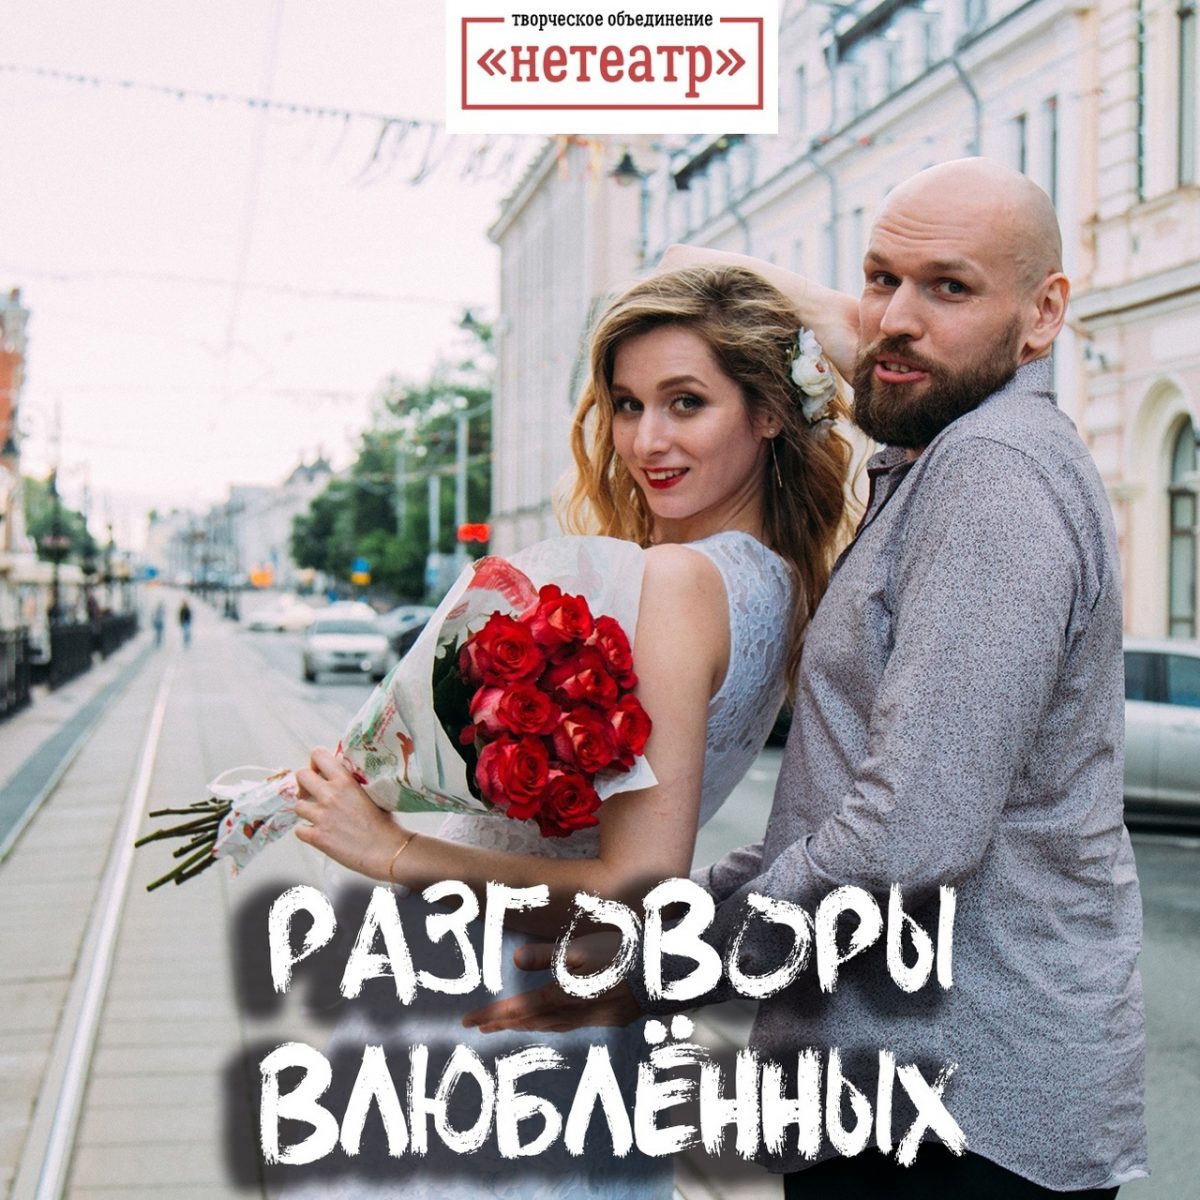 Влюбленных приглашают на самый популярный камерный спектакль Нижнего Новгорода